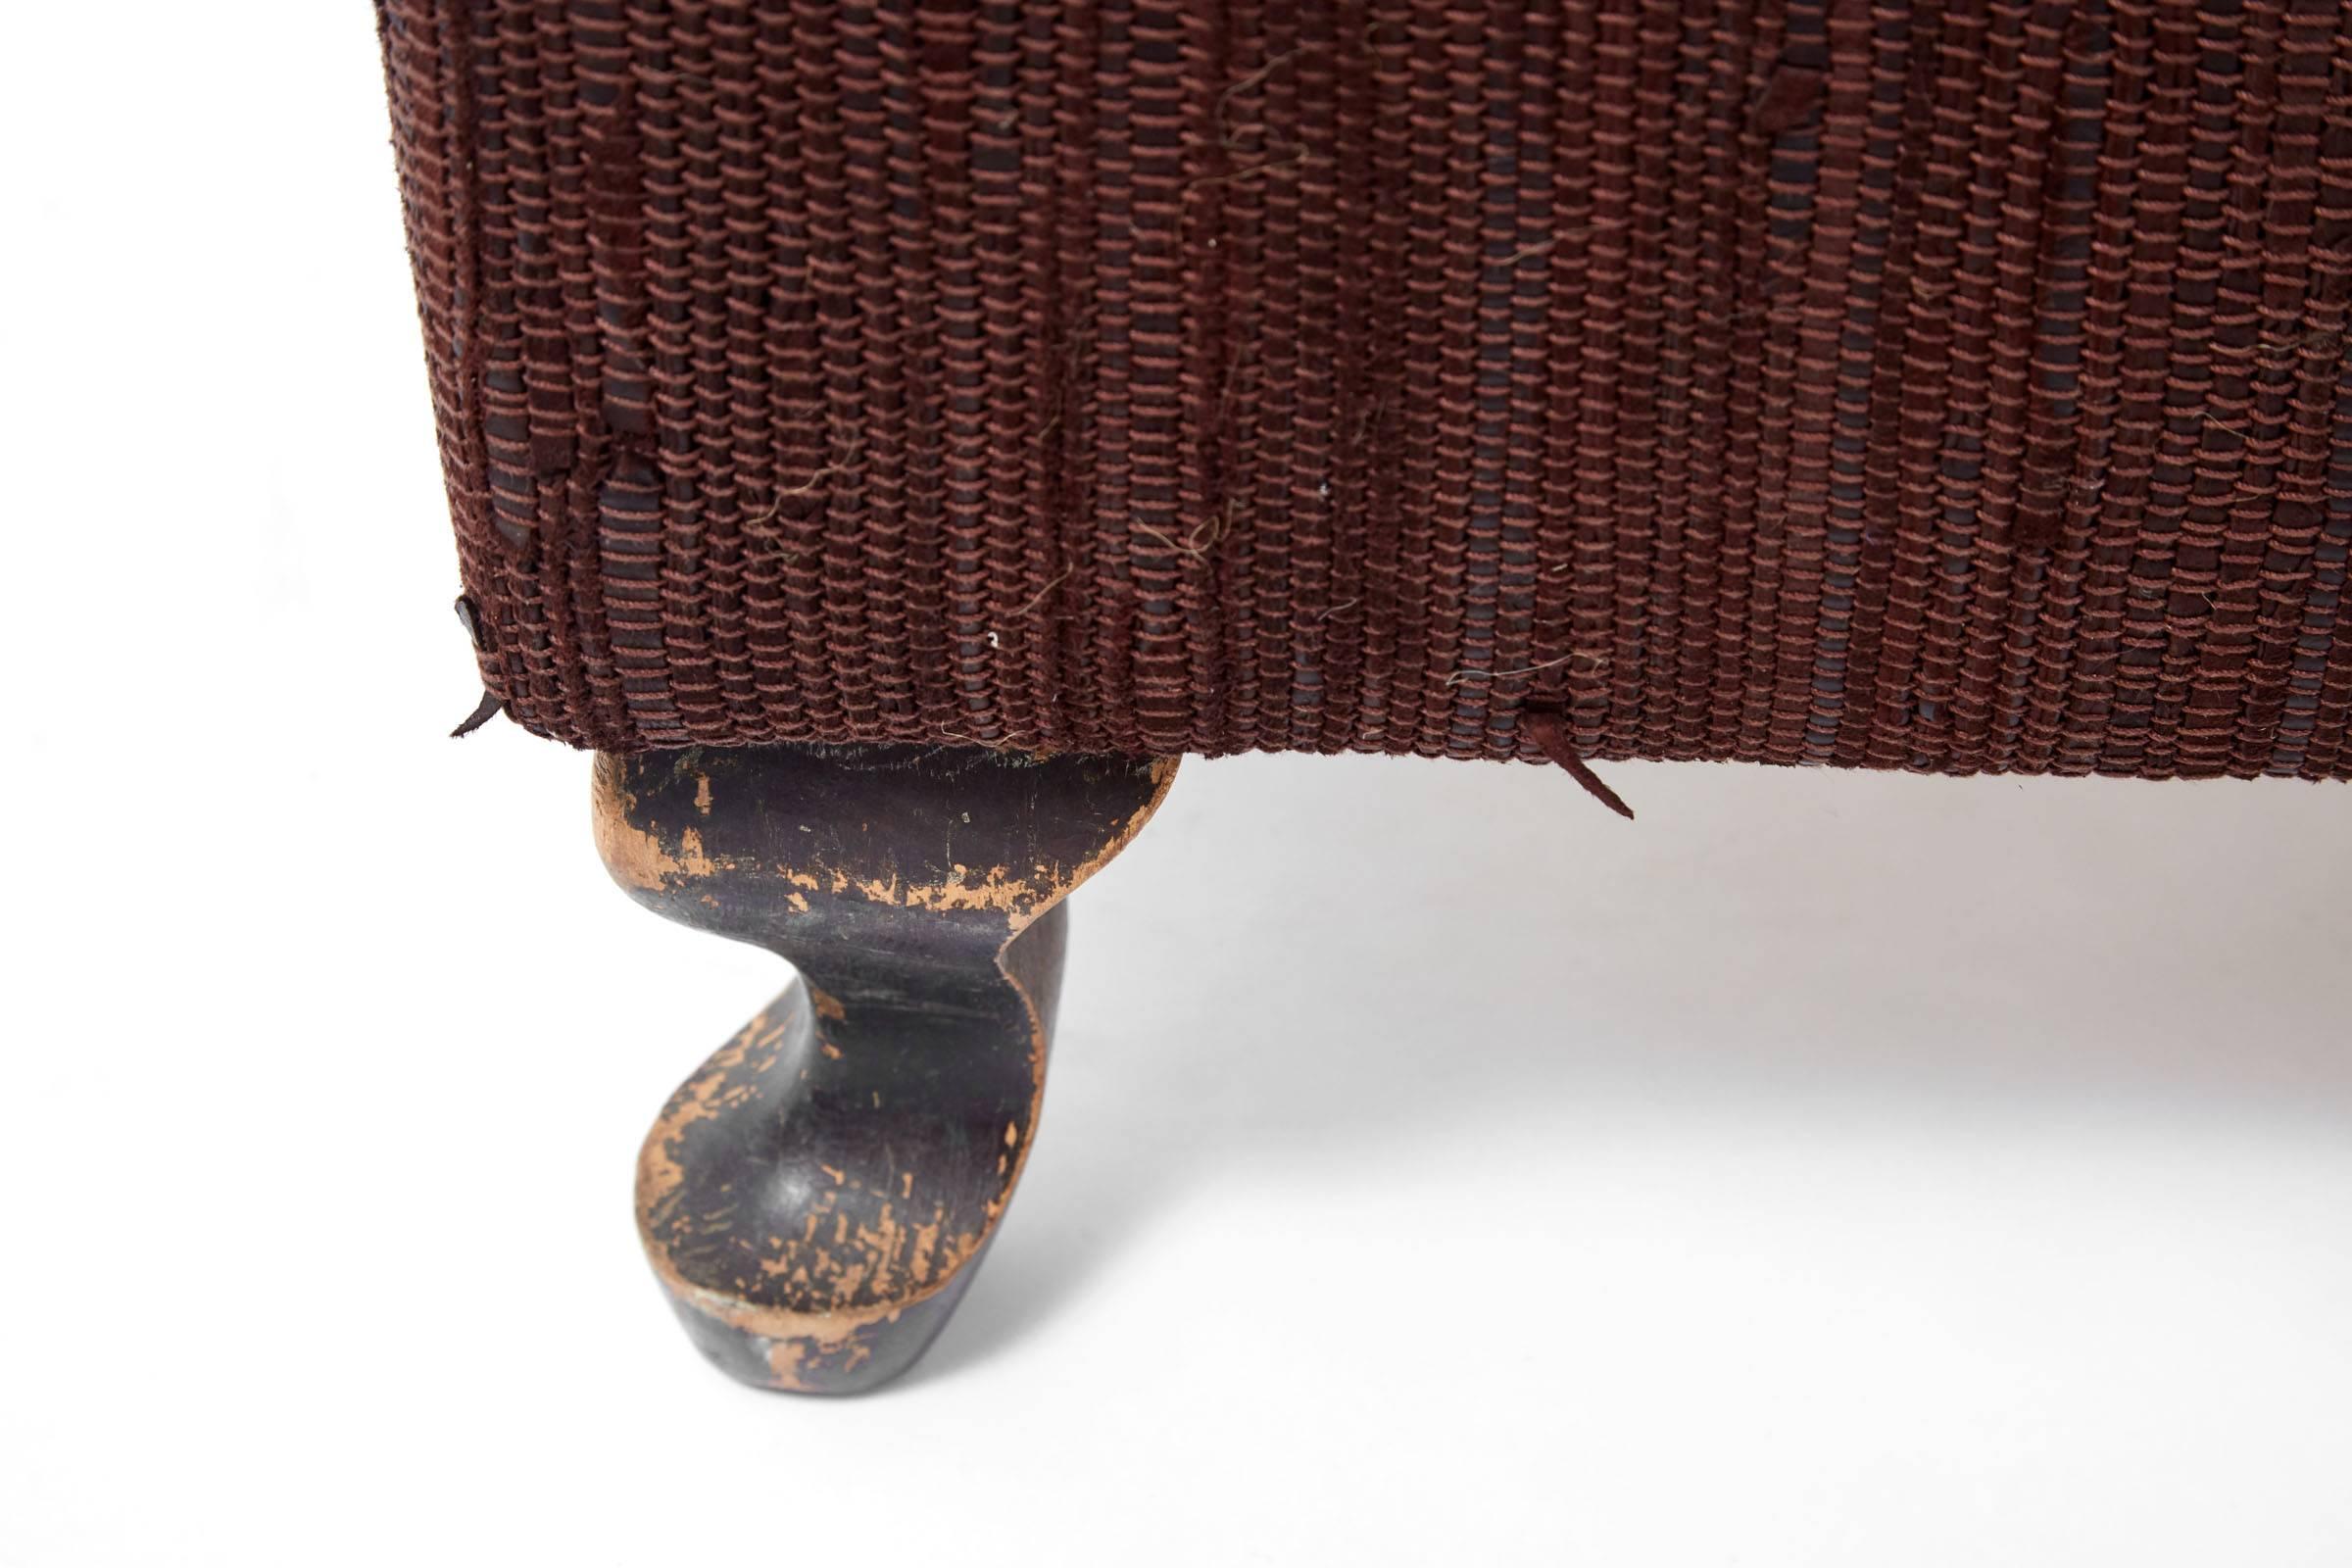 21st Century Woven Leather Ottoman on 19th Century Wooden Legs 3